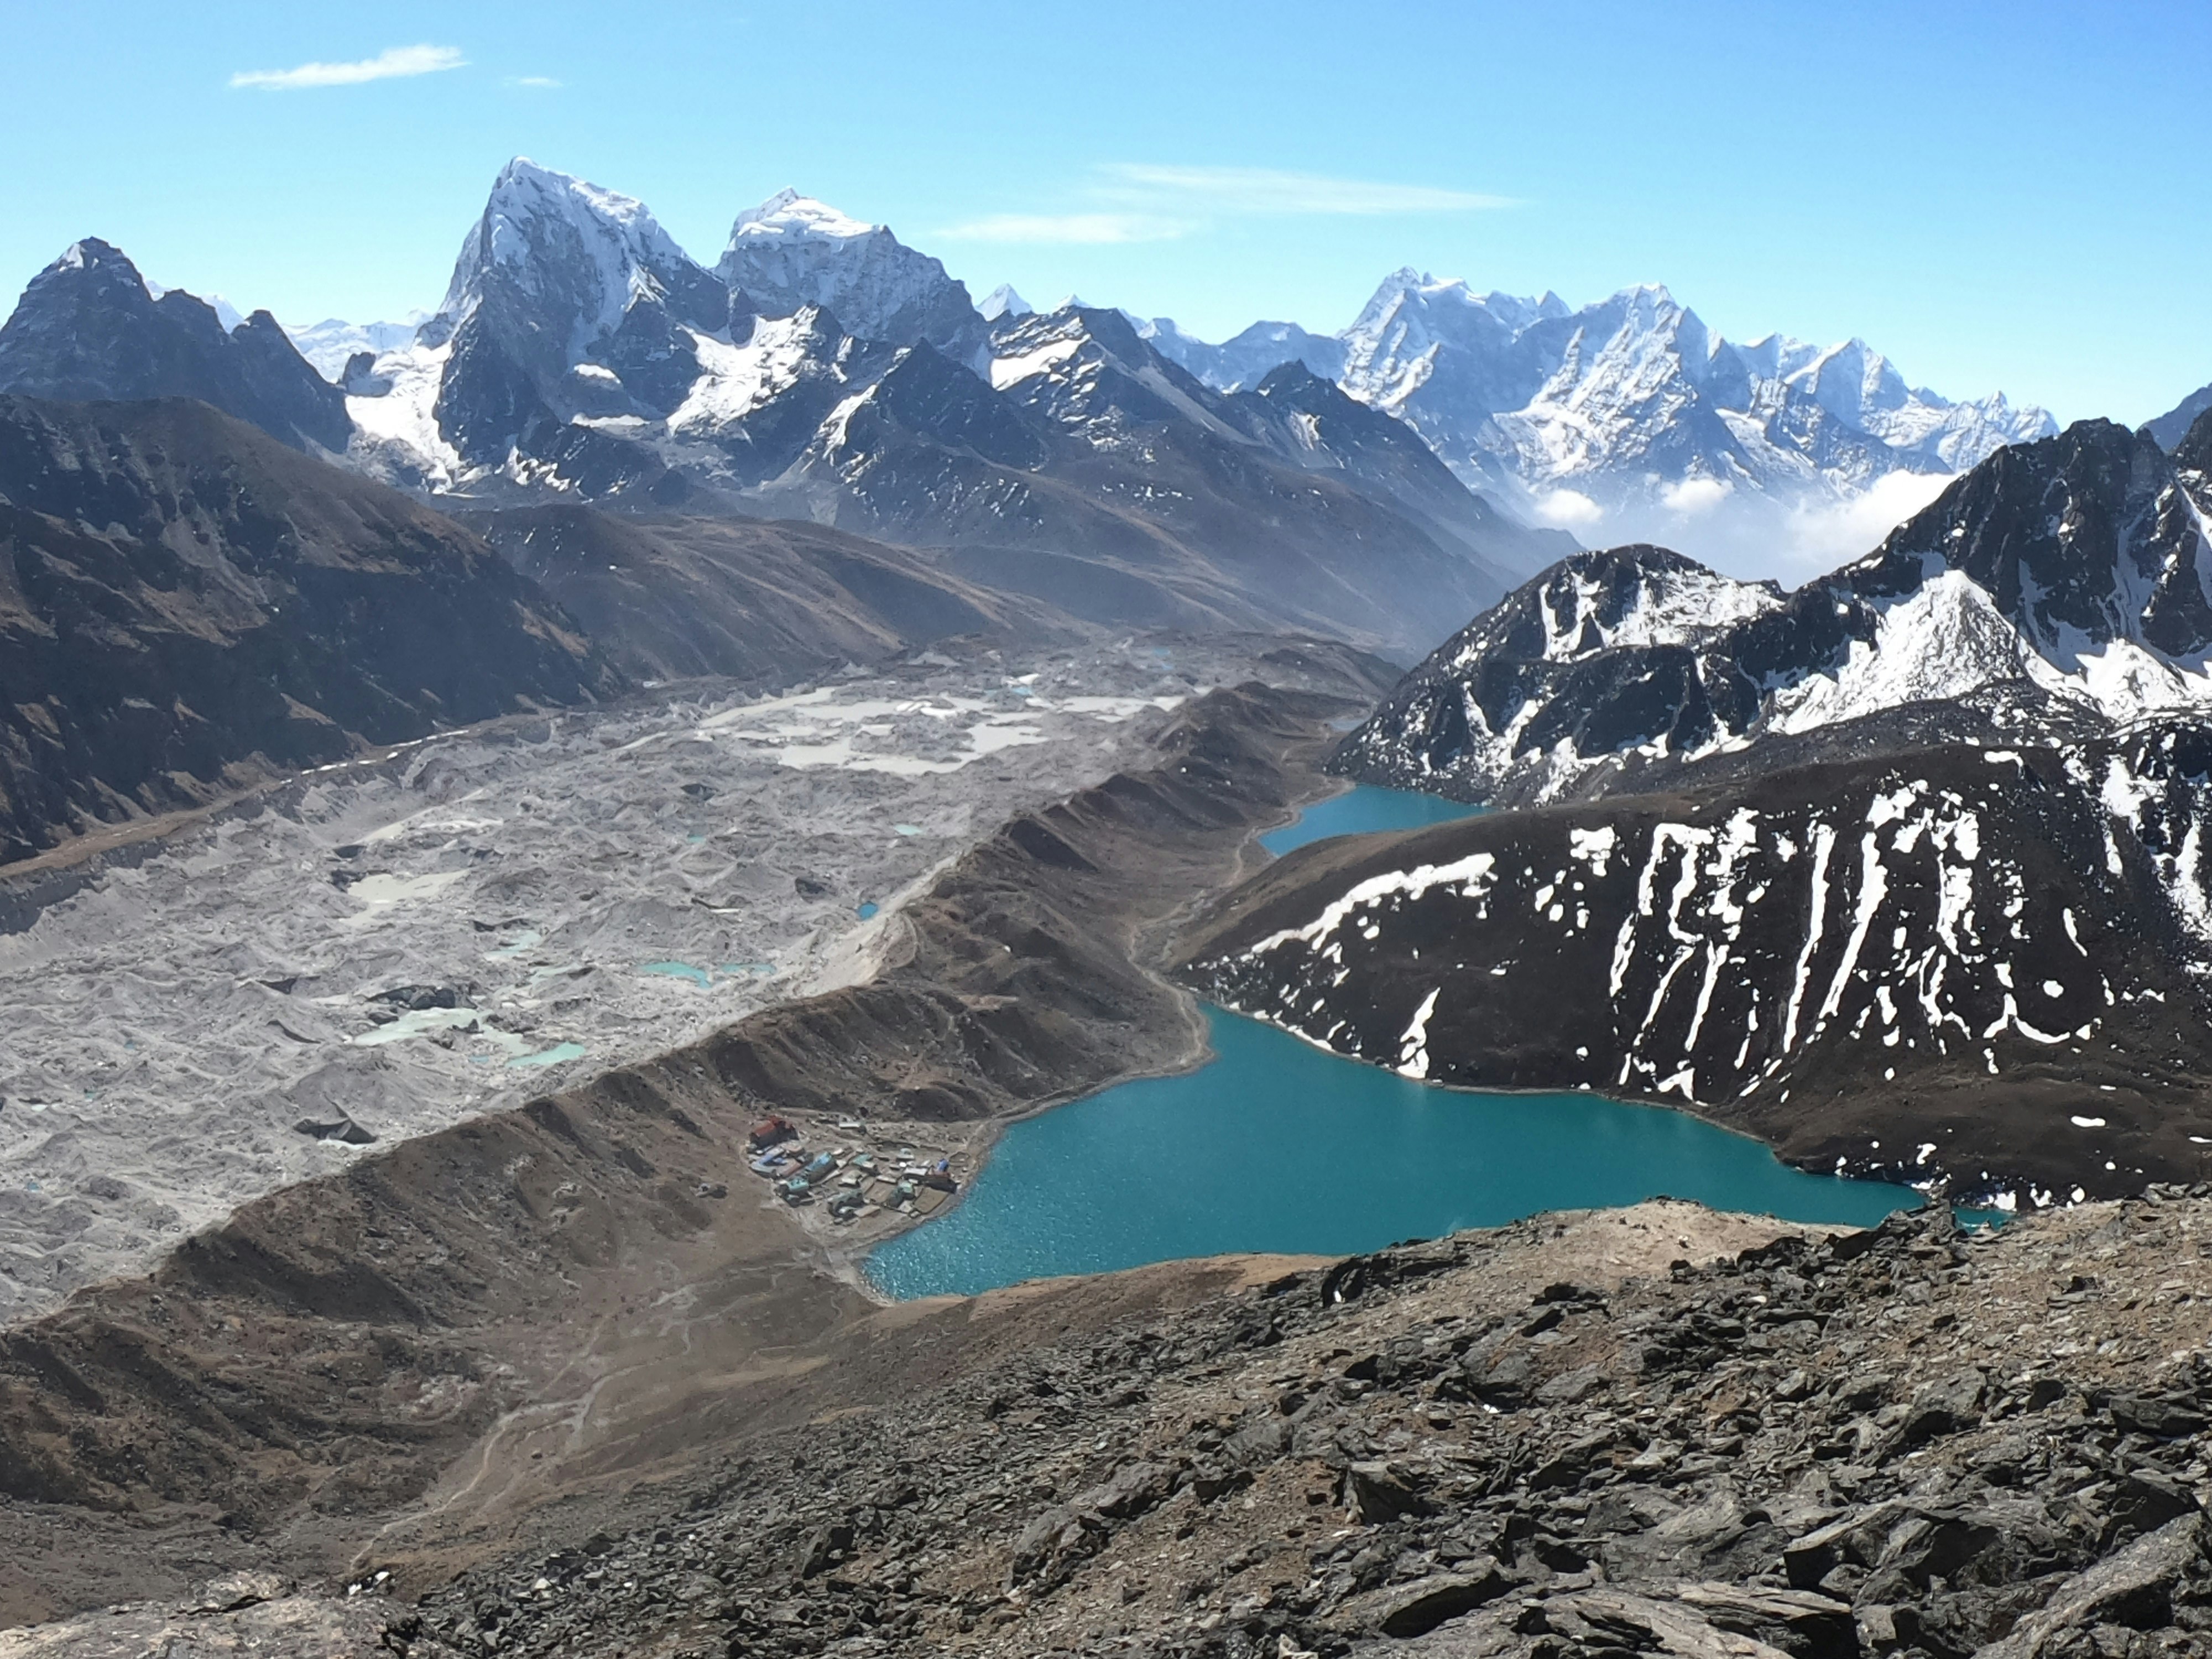 A mountain range in Nepal